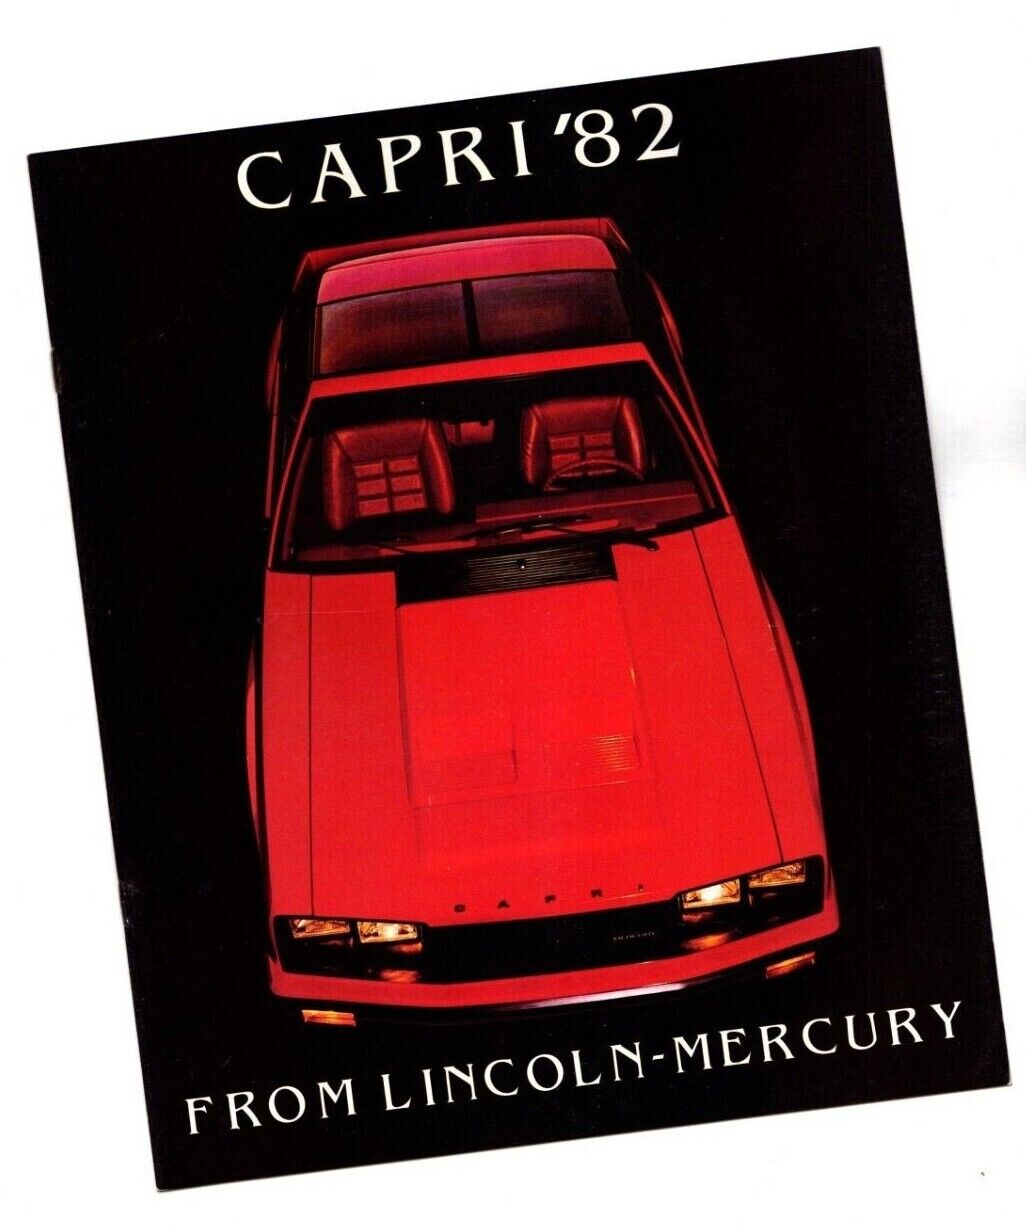 1982 Mercury CAPRI Brochure / Catalog with Color Chart: BLACK MAGIC, RS, GS, L